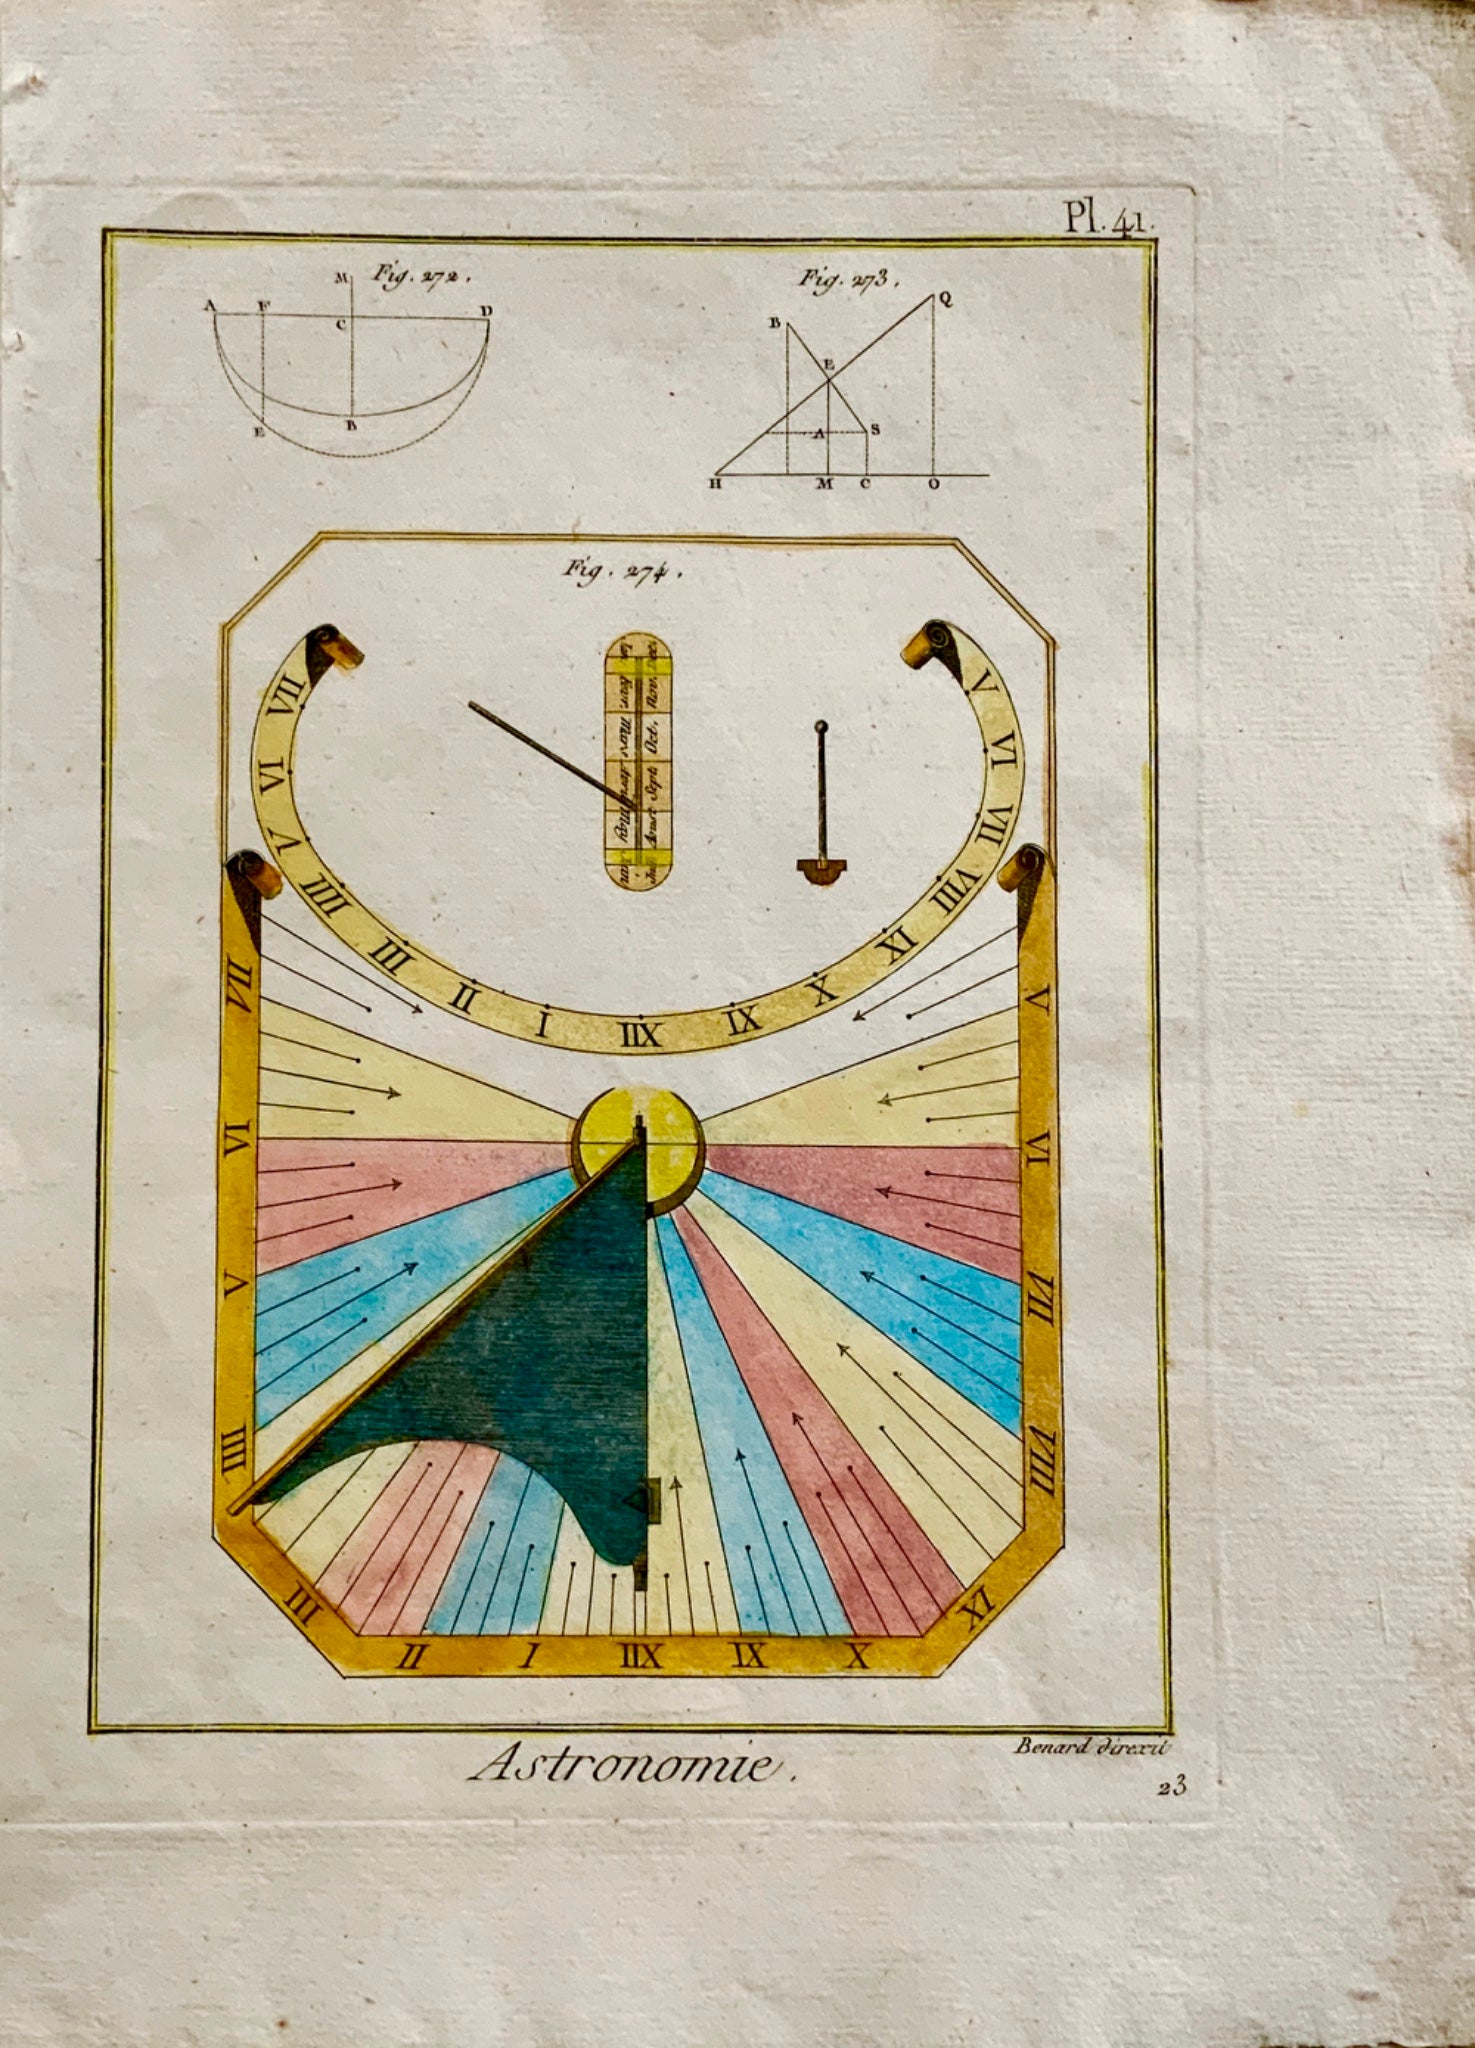 1789 Benard - Astronomie SUN DIAL - Hand colour quarto engraving - Astronomy